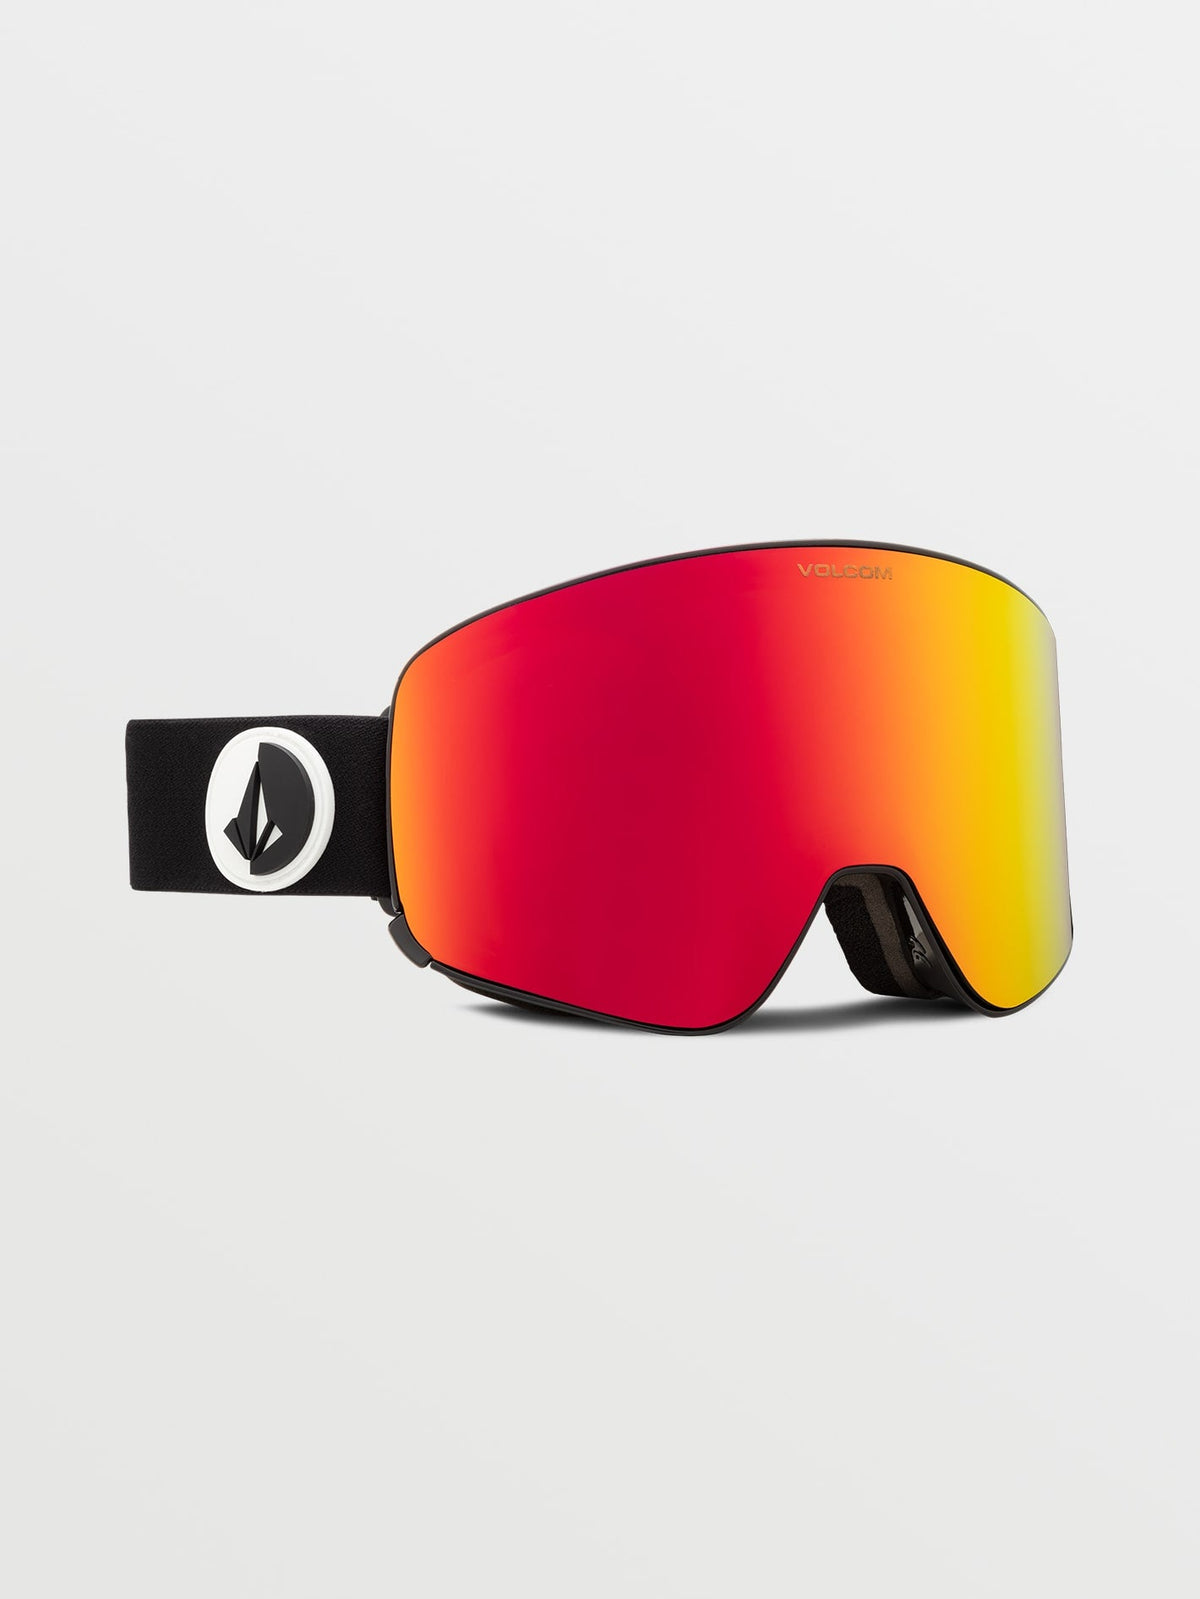 Volcom Odyssey Goggle with Bonus Lens Gloss Black/red Chrome